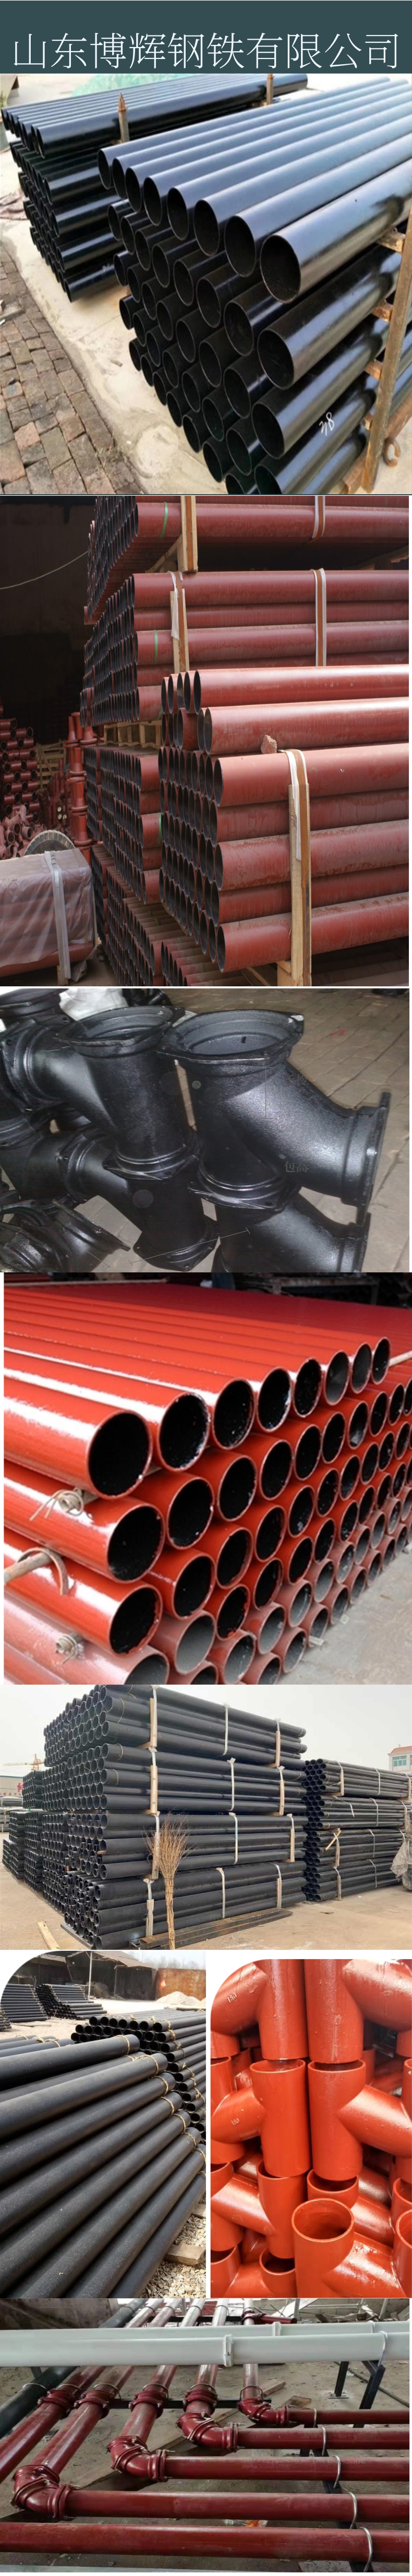 丹东柔性铸铁管生产厂家 博辉 dn150/6寸铸铁管